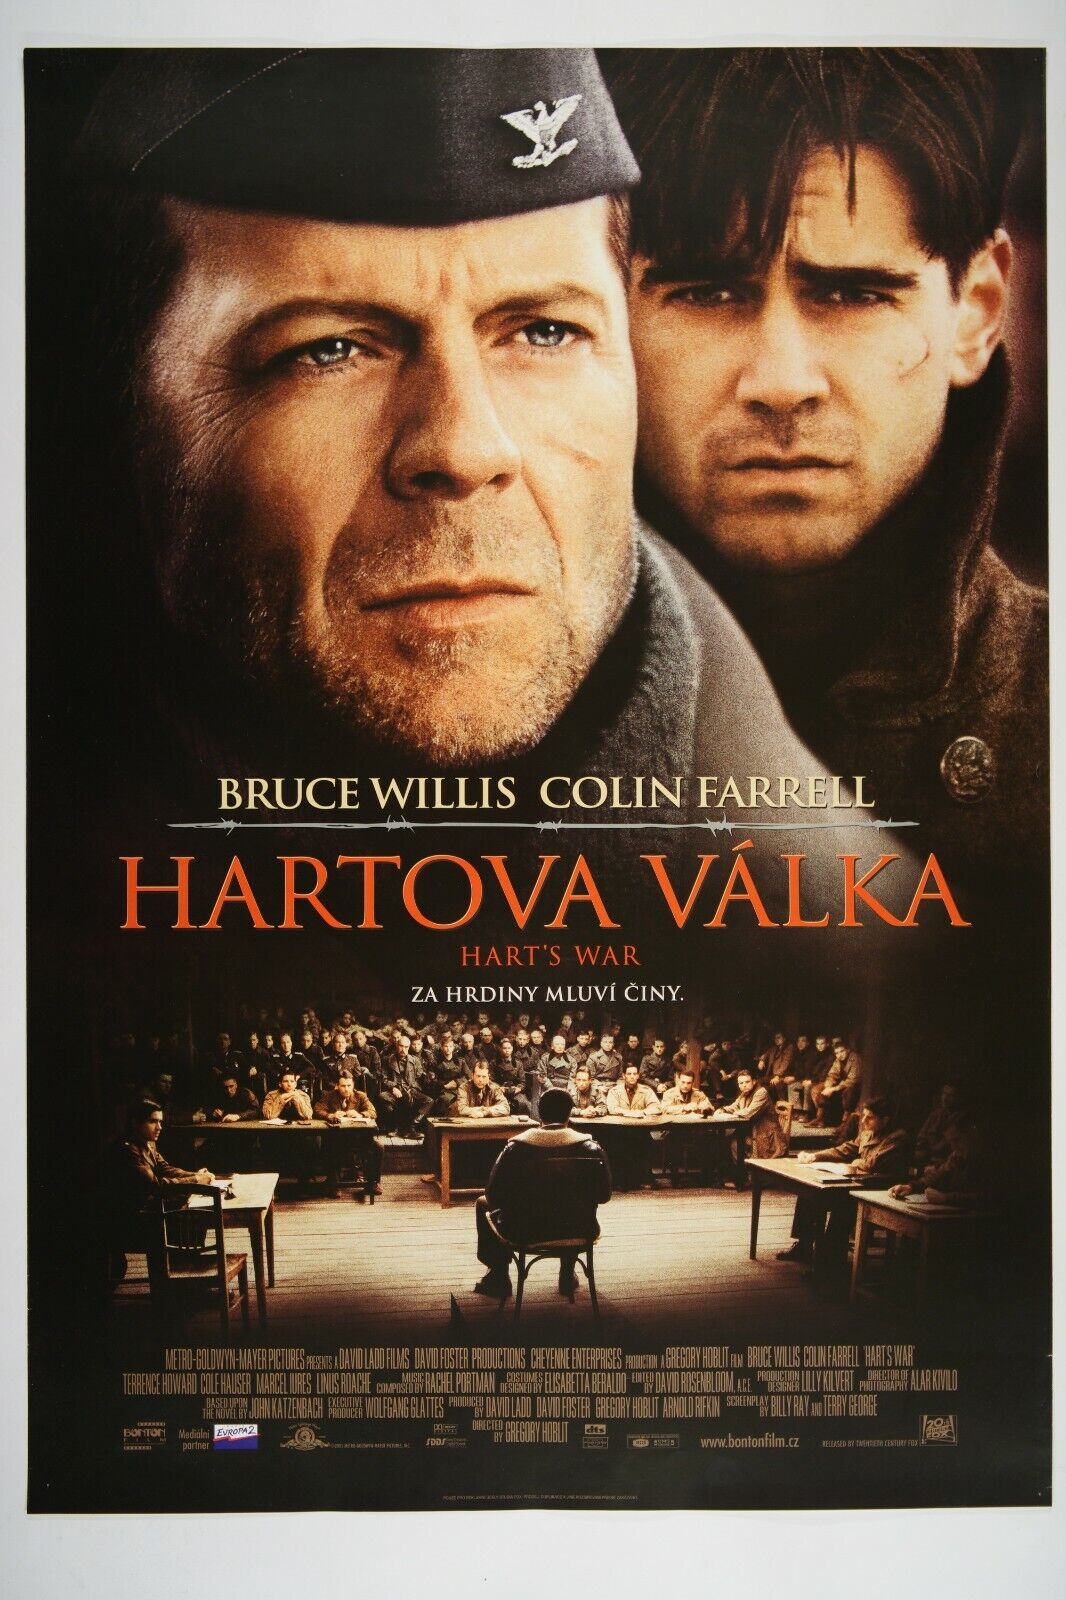 HART'S WAR 23x33 Original Czech movie poster 2002 BRUCE WILLIS, COLIN FARRELL